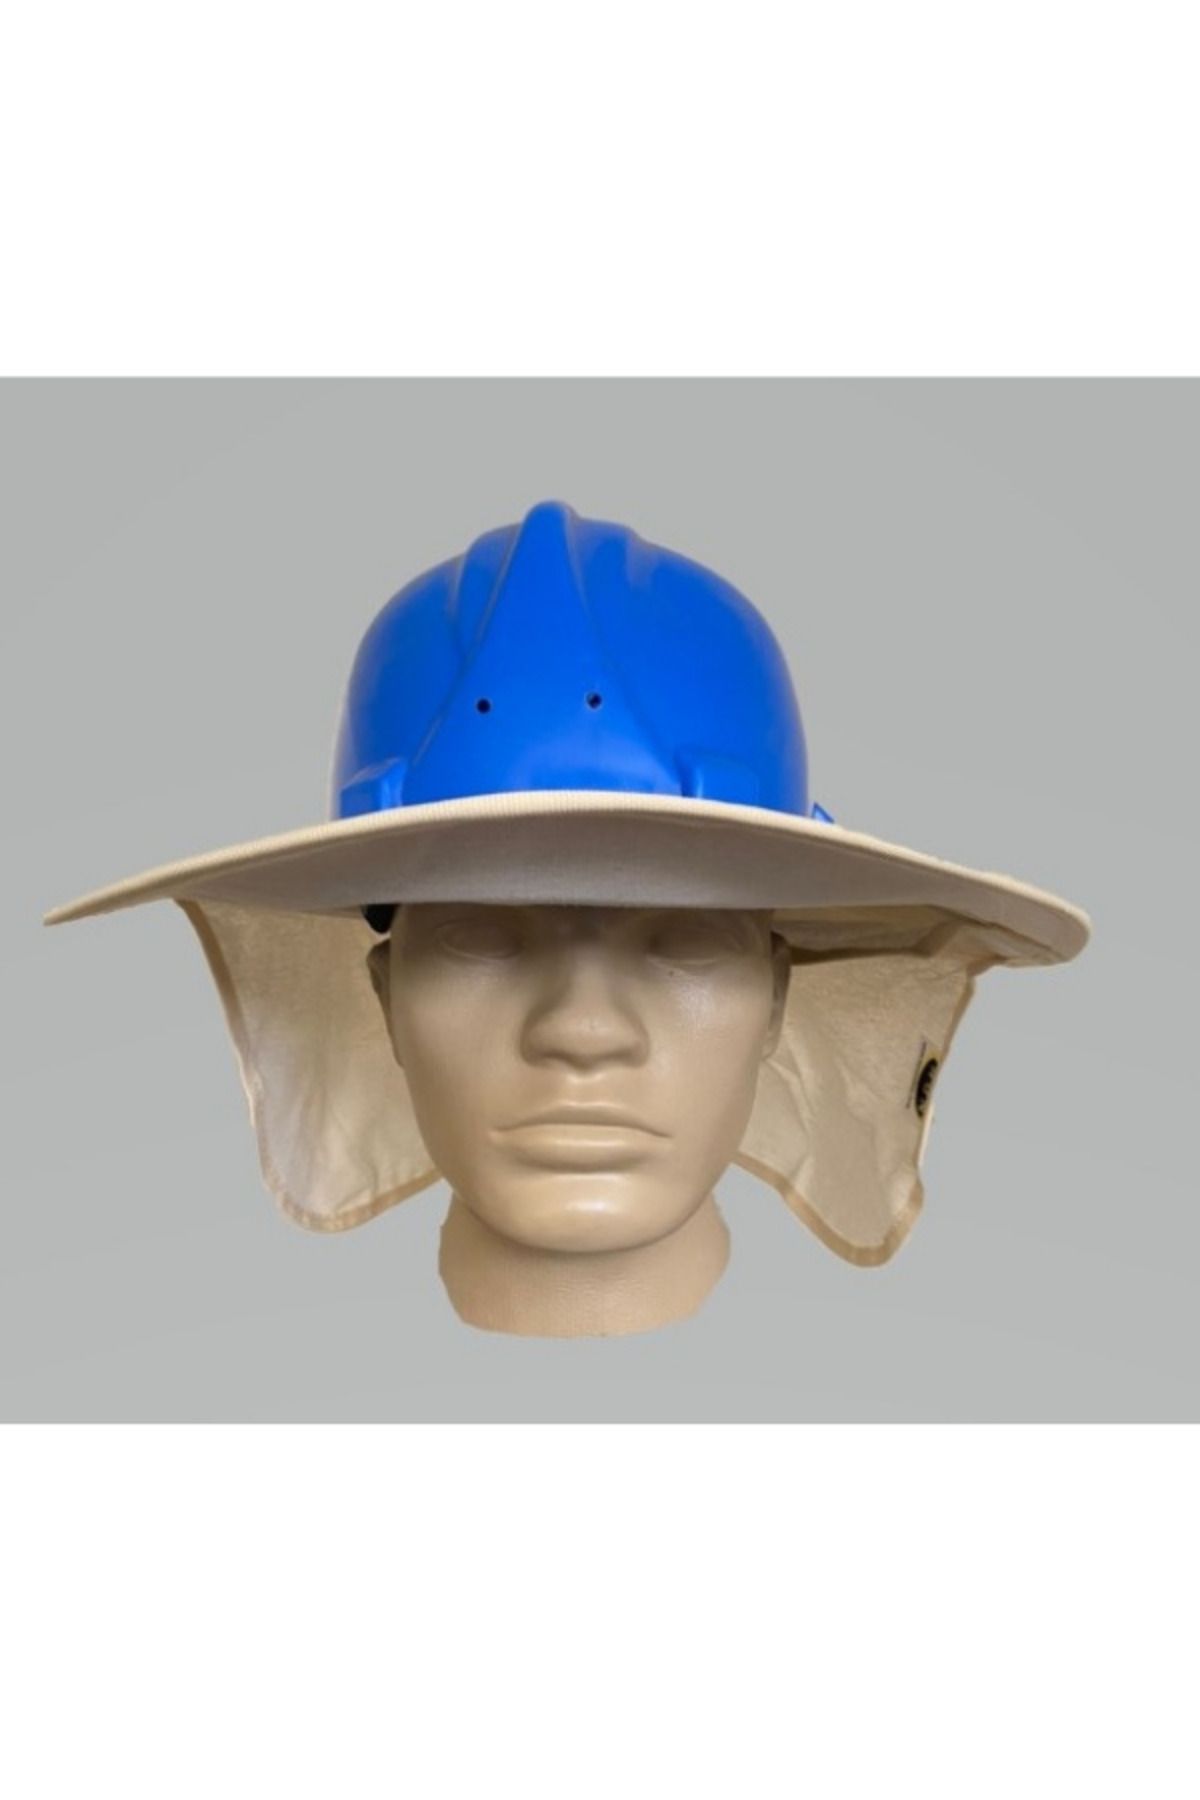 Hunsafety Baret Güneşliği Tam Kenarlı Baş Ve Boyun Korumalı Güneş Koruyuculuğu Siperlik Şapka Krem Konforlu